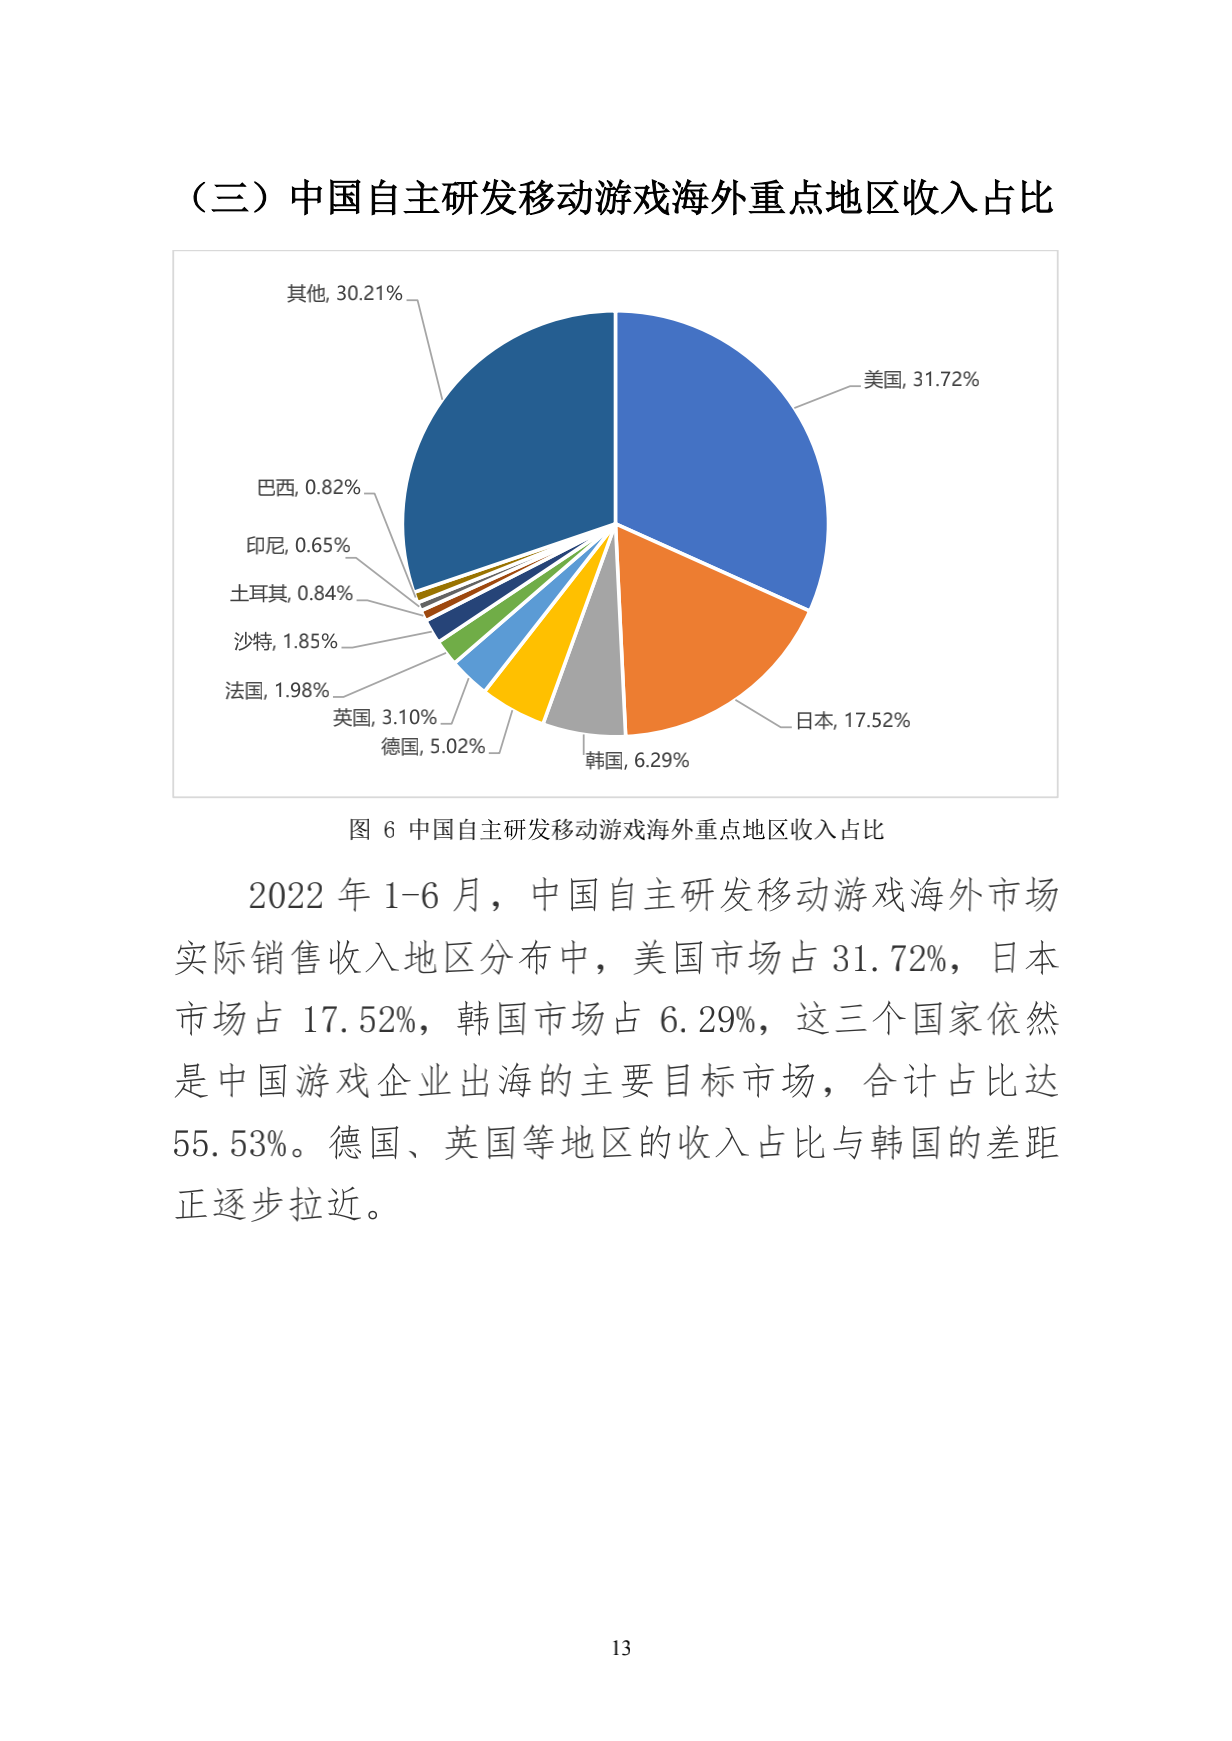 220714-2022年1-6月中国游戏产业报告_21